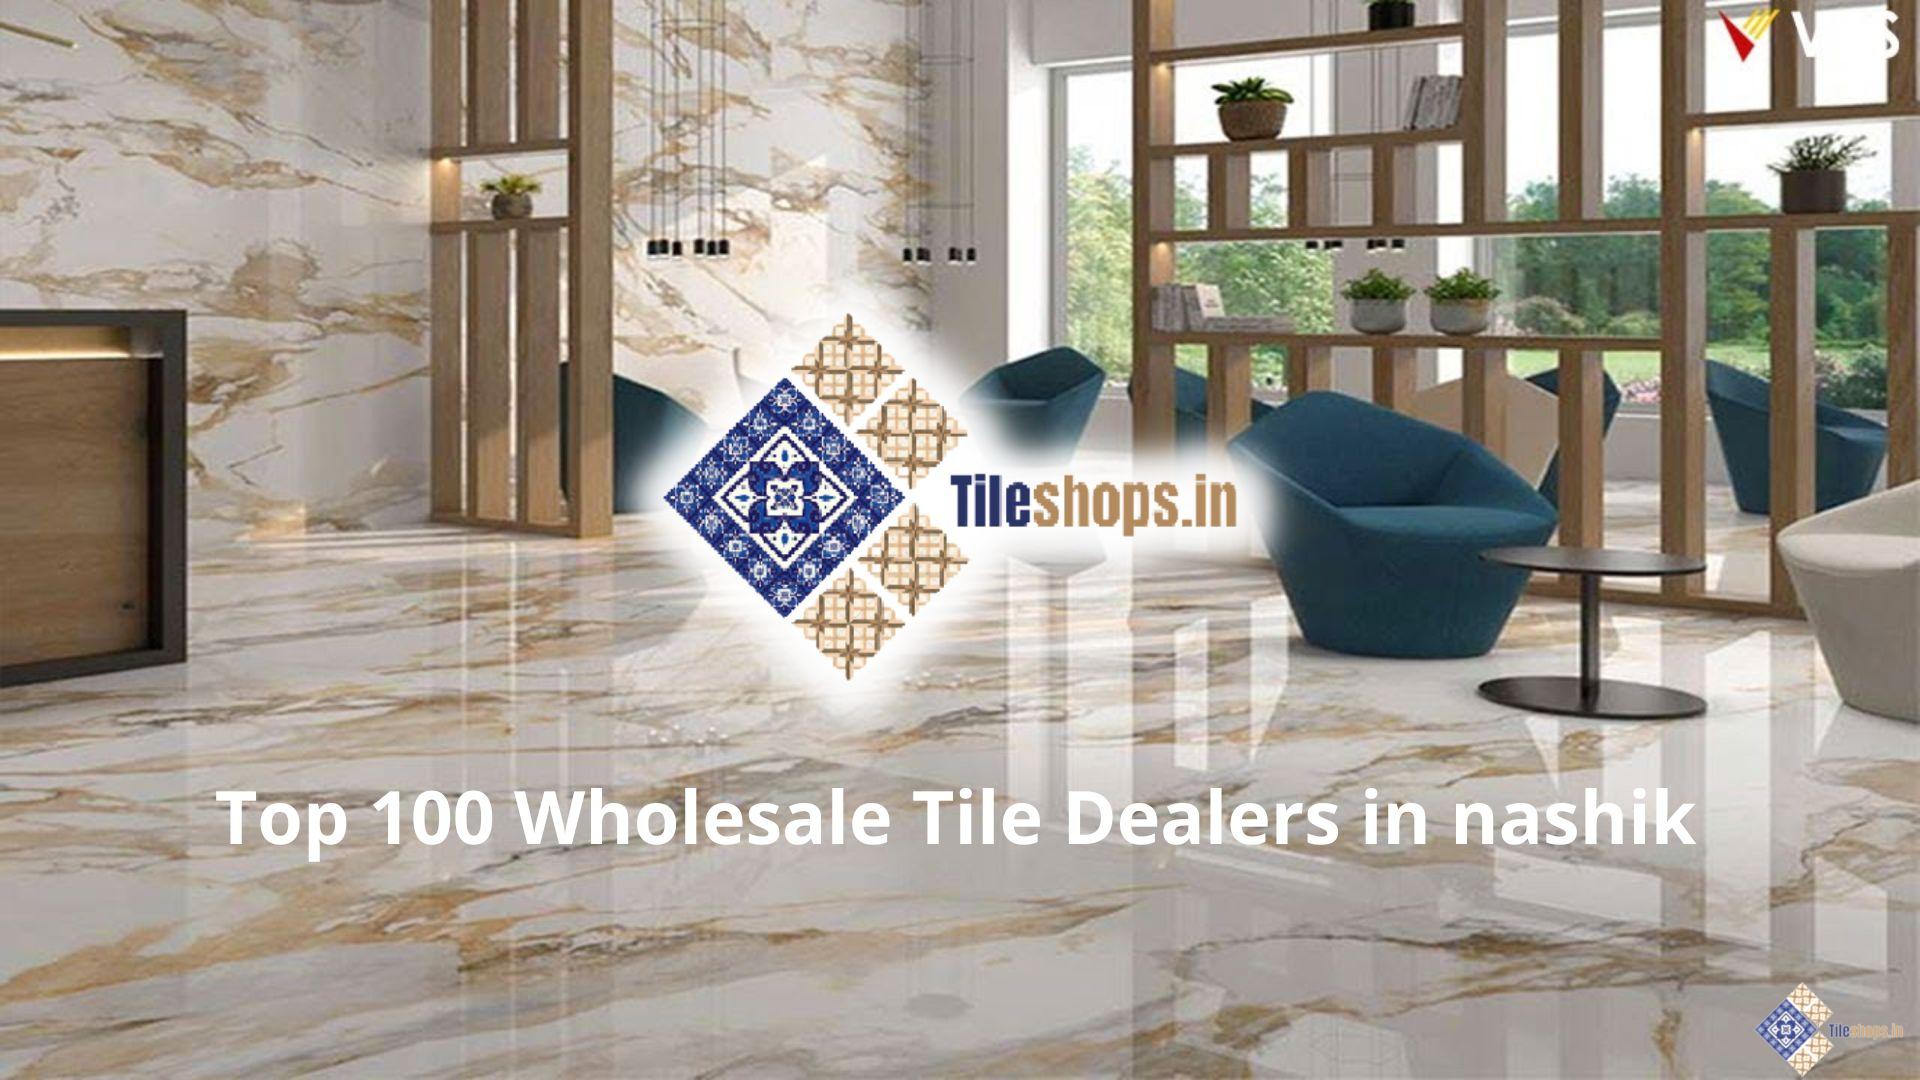 Top 100 Wholesale Tile Shops in nashik